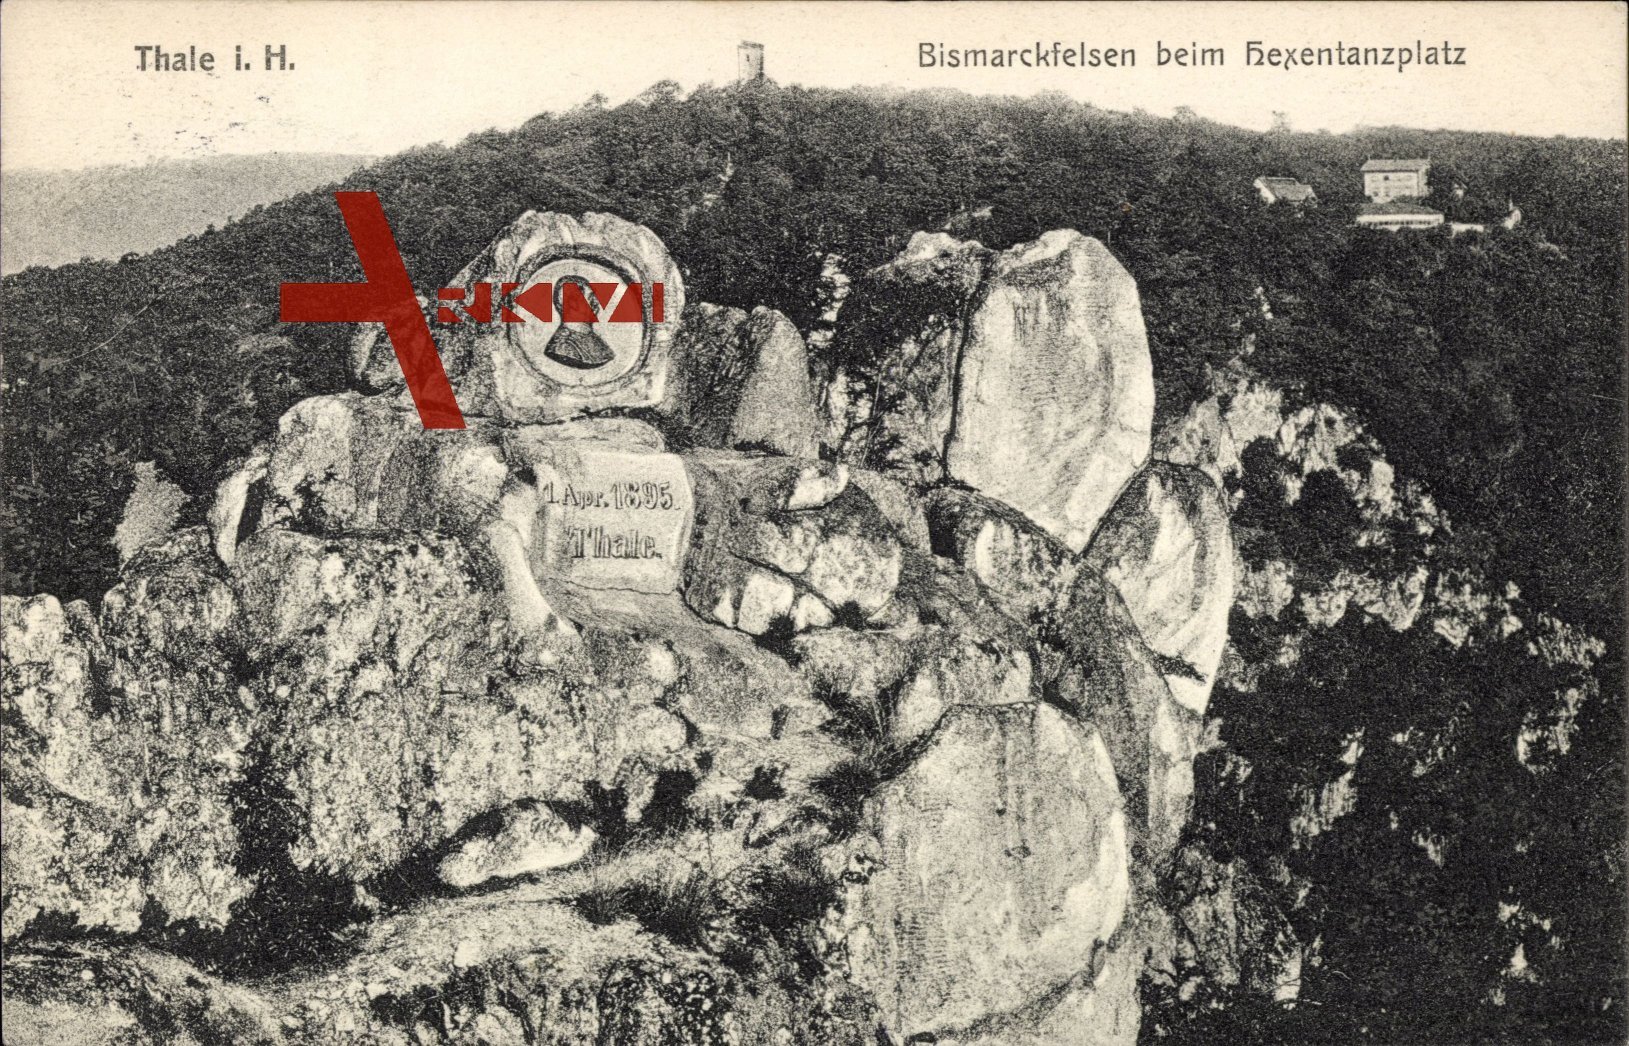 Thale im Harz, Blick auf die Bismarckfelsen beim Hexentanzplatz